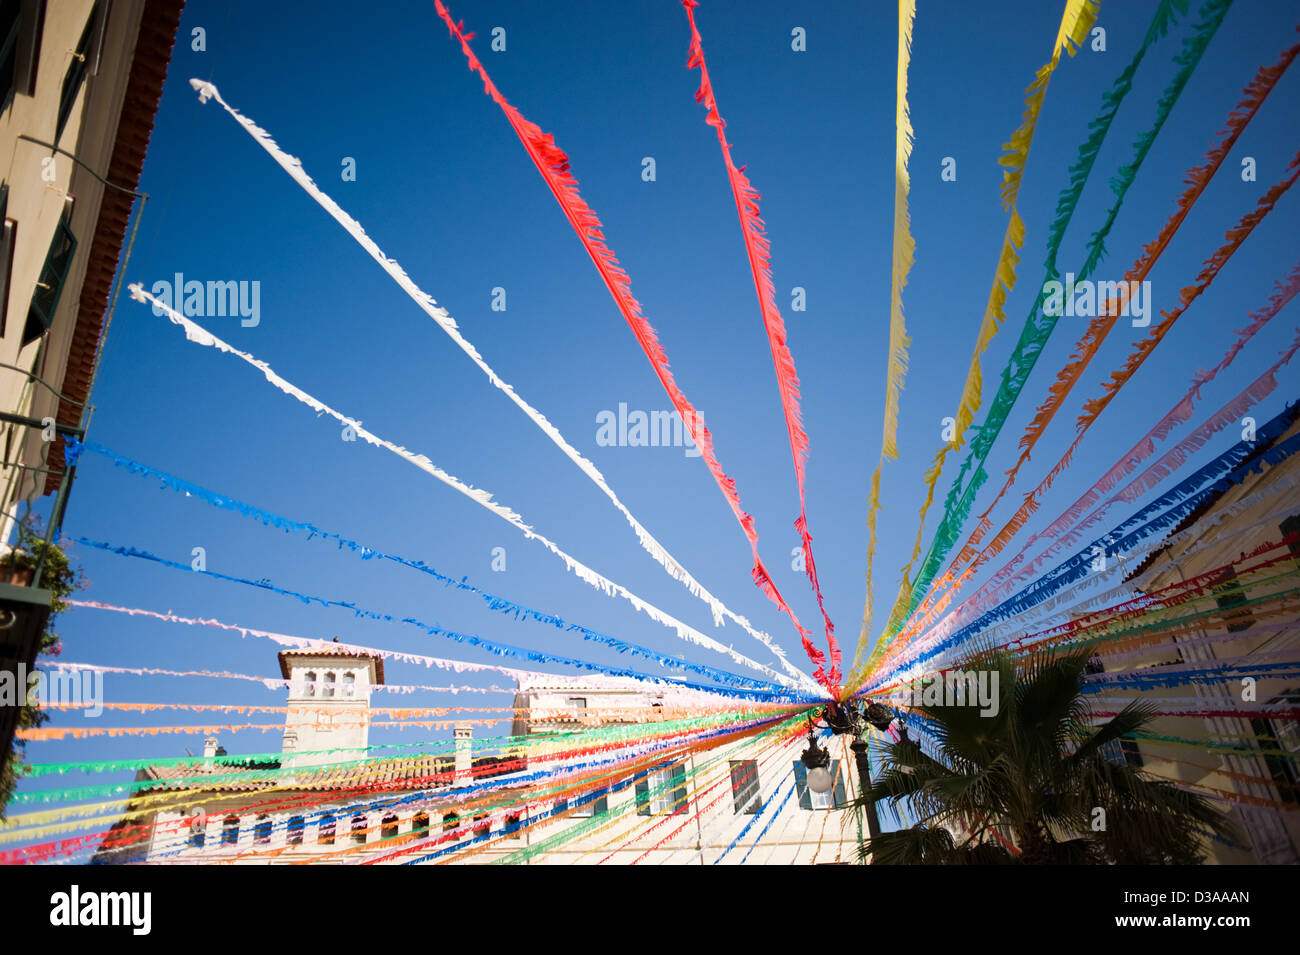 Festosa di carta colorati appesi da lampione in Mao (Mahon), Menorca (Minorca), Spagna. Foto Stock